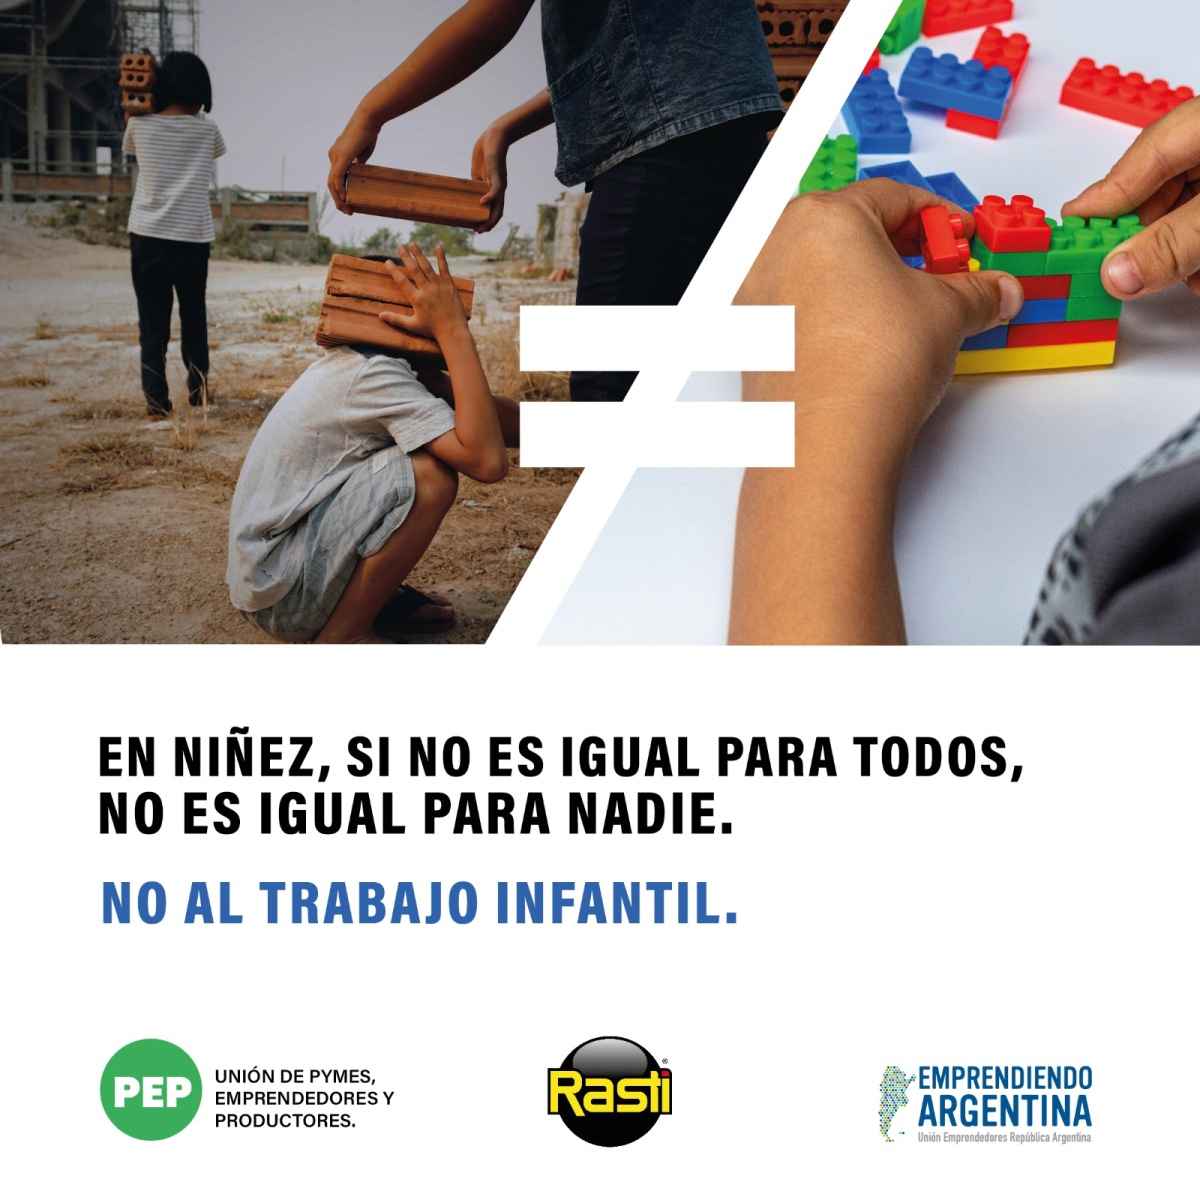 Portada de “Iguales”: la Unión de Emprendedores, el PEP y Rasti lanzan una campaña contra el trabajo infantil junto a Amén Argentina